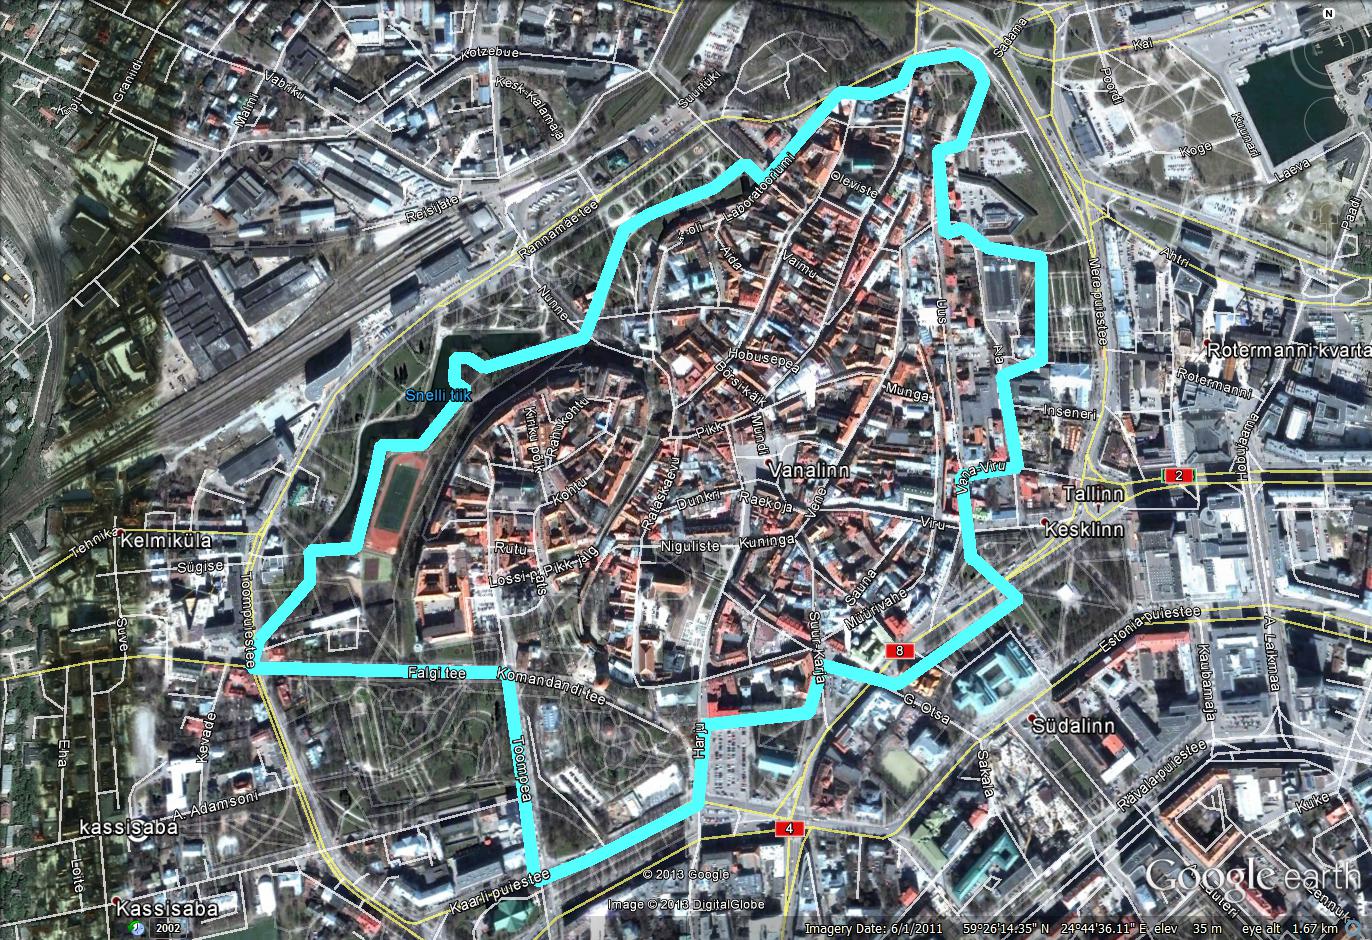 tallinna vanha kaupunki kartta Pentti Murole blogi: Pyörällä Tallinnassa Penan reiteillä   osa 1 tallinna vanha kaupunki kartta